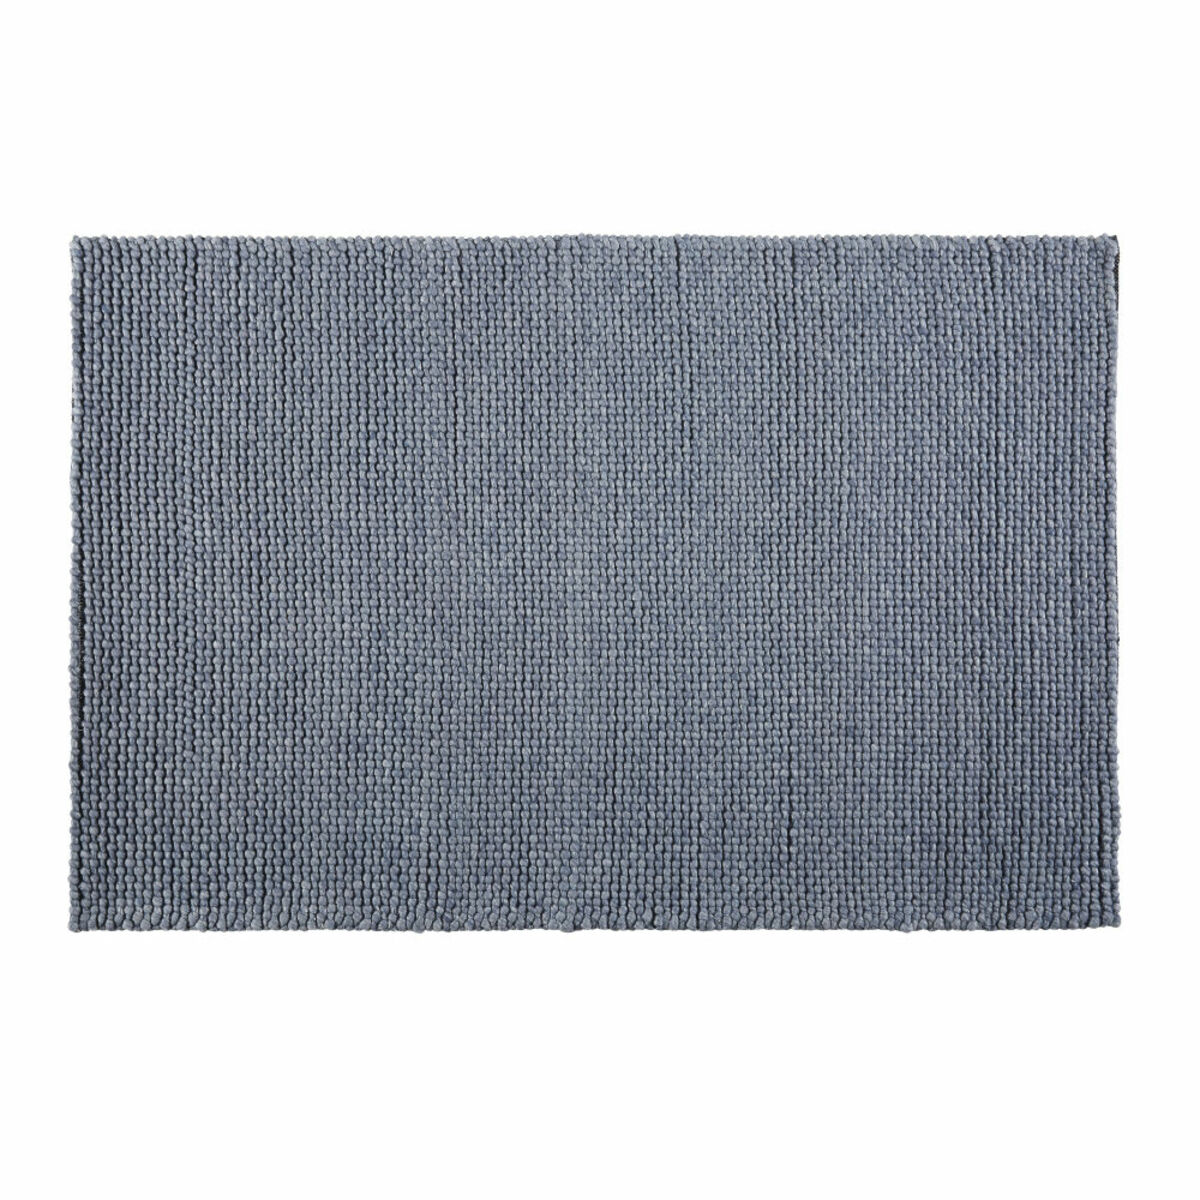 Tapis en laine tressée gris anthracite 140x200